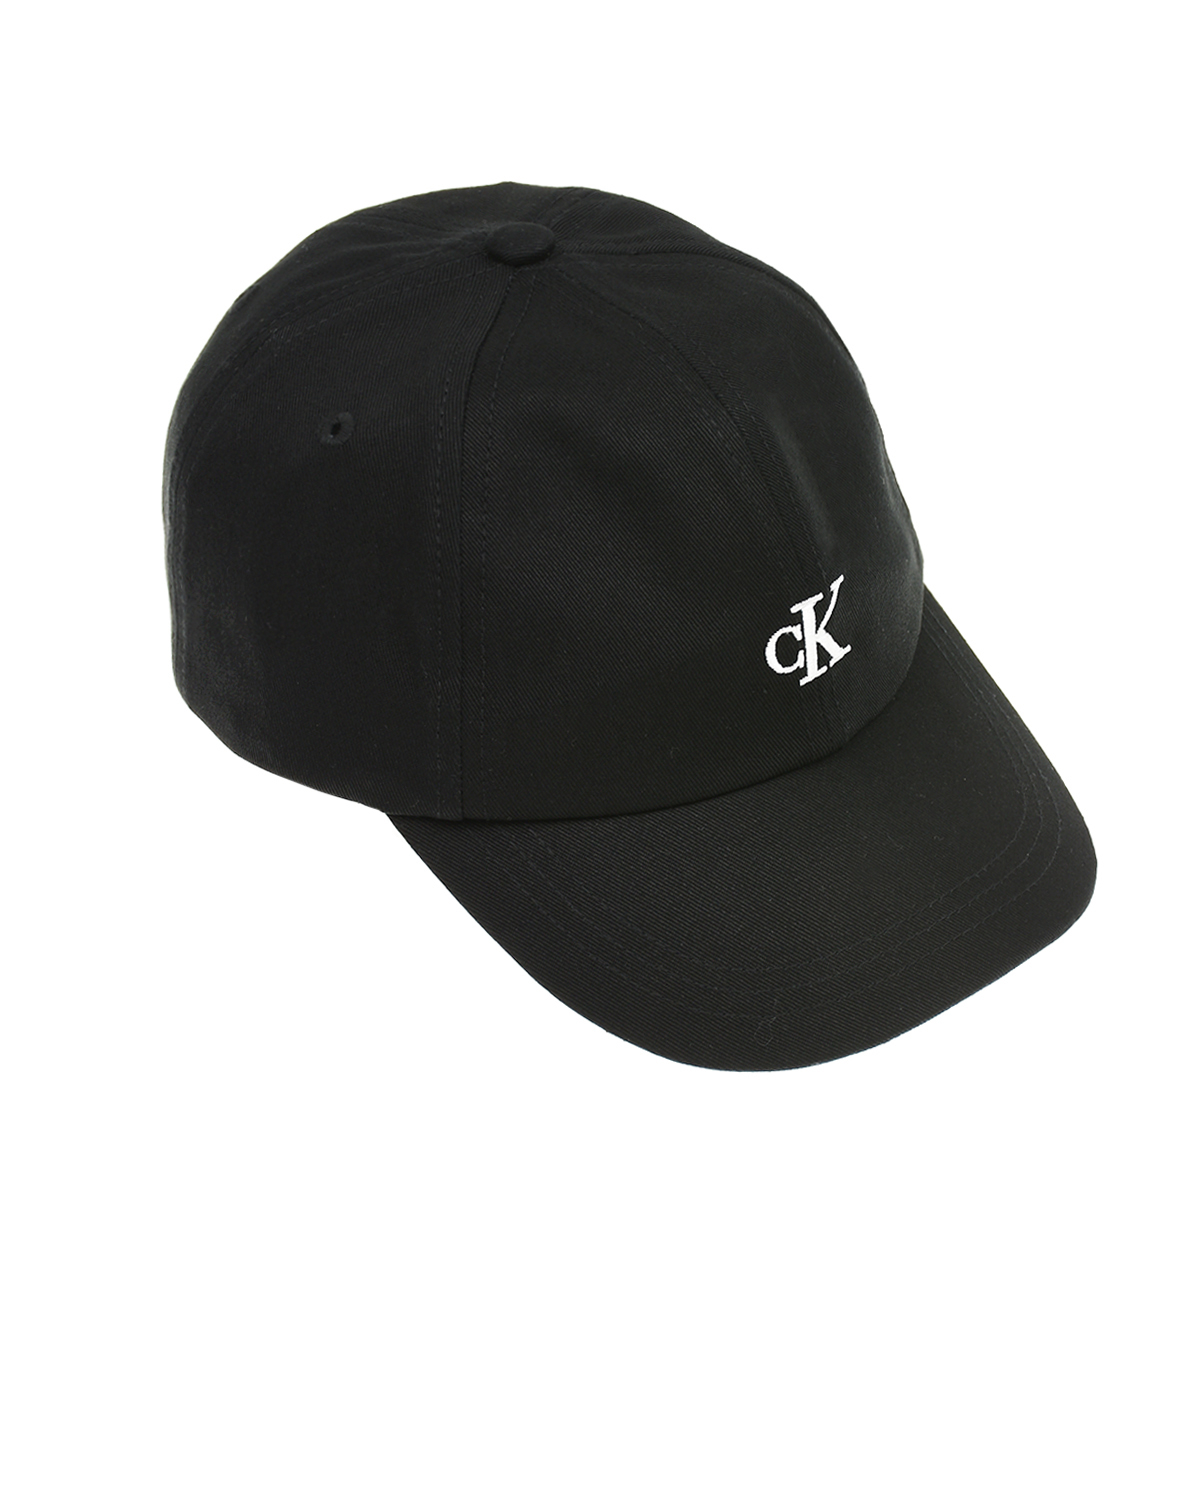 Черная бейсболка с белым логотипом Calvin Klein детская, размер S, цвет черный